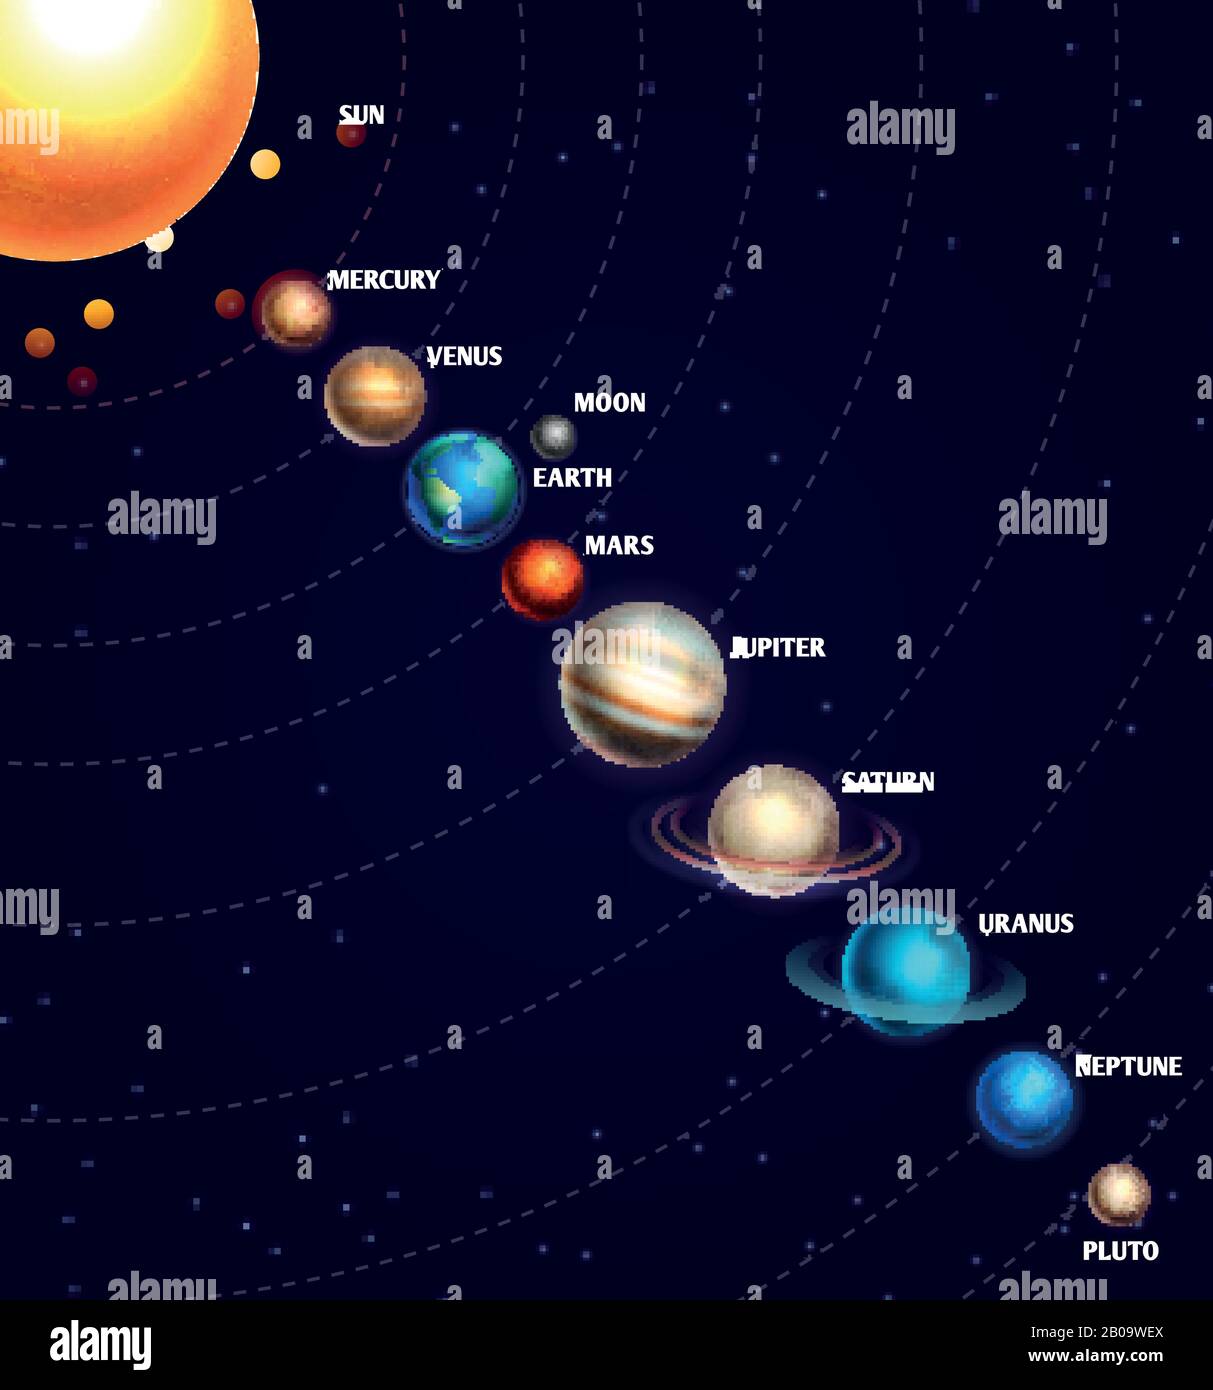 Sonnensystem mit Sonne und Planeten im Orbit mit Sternenhimmel im Universum. Galaxie mit saturn-, venus- und neptun-planeten, Abbildung von Cartoon-Planeten auf der Umlaufbahn Stock Vektor